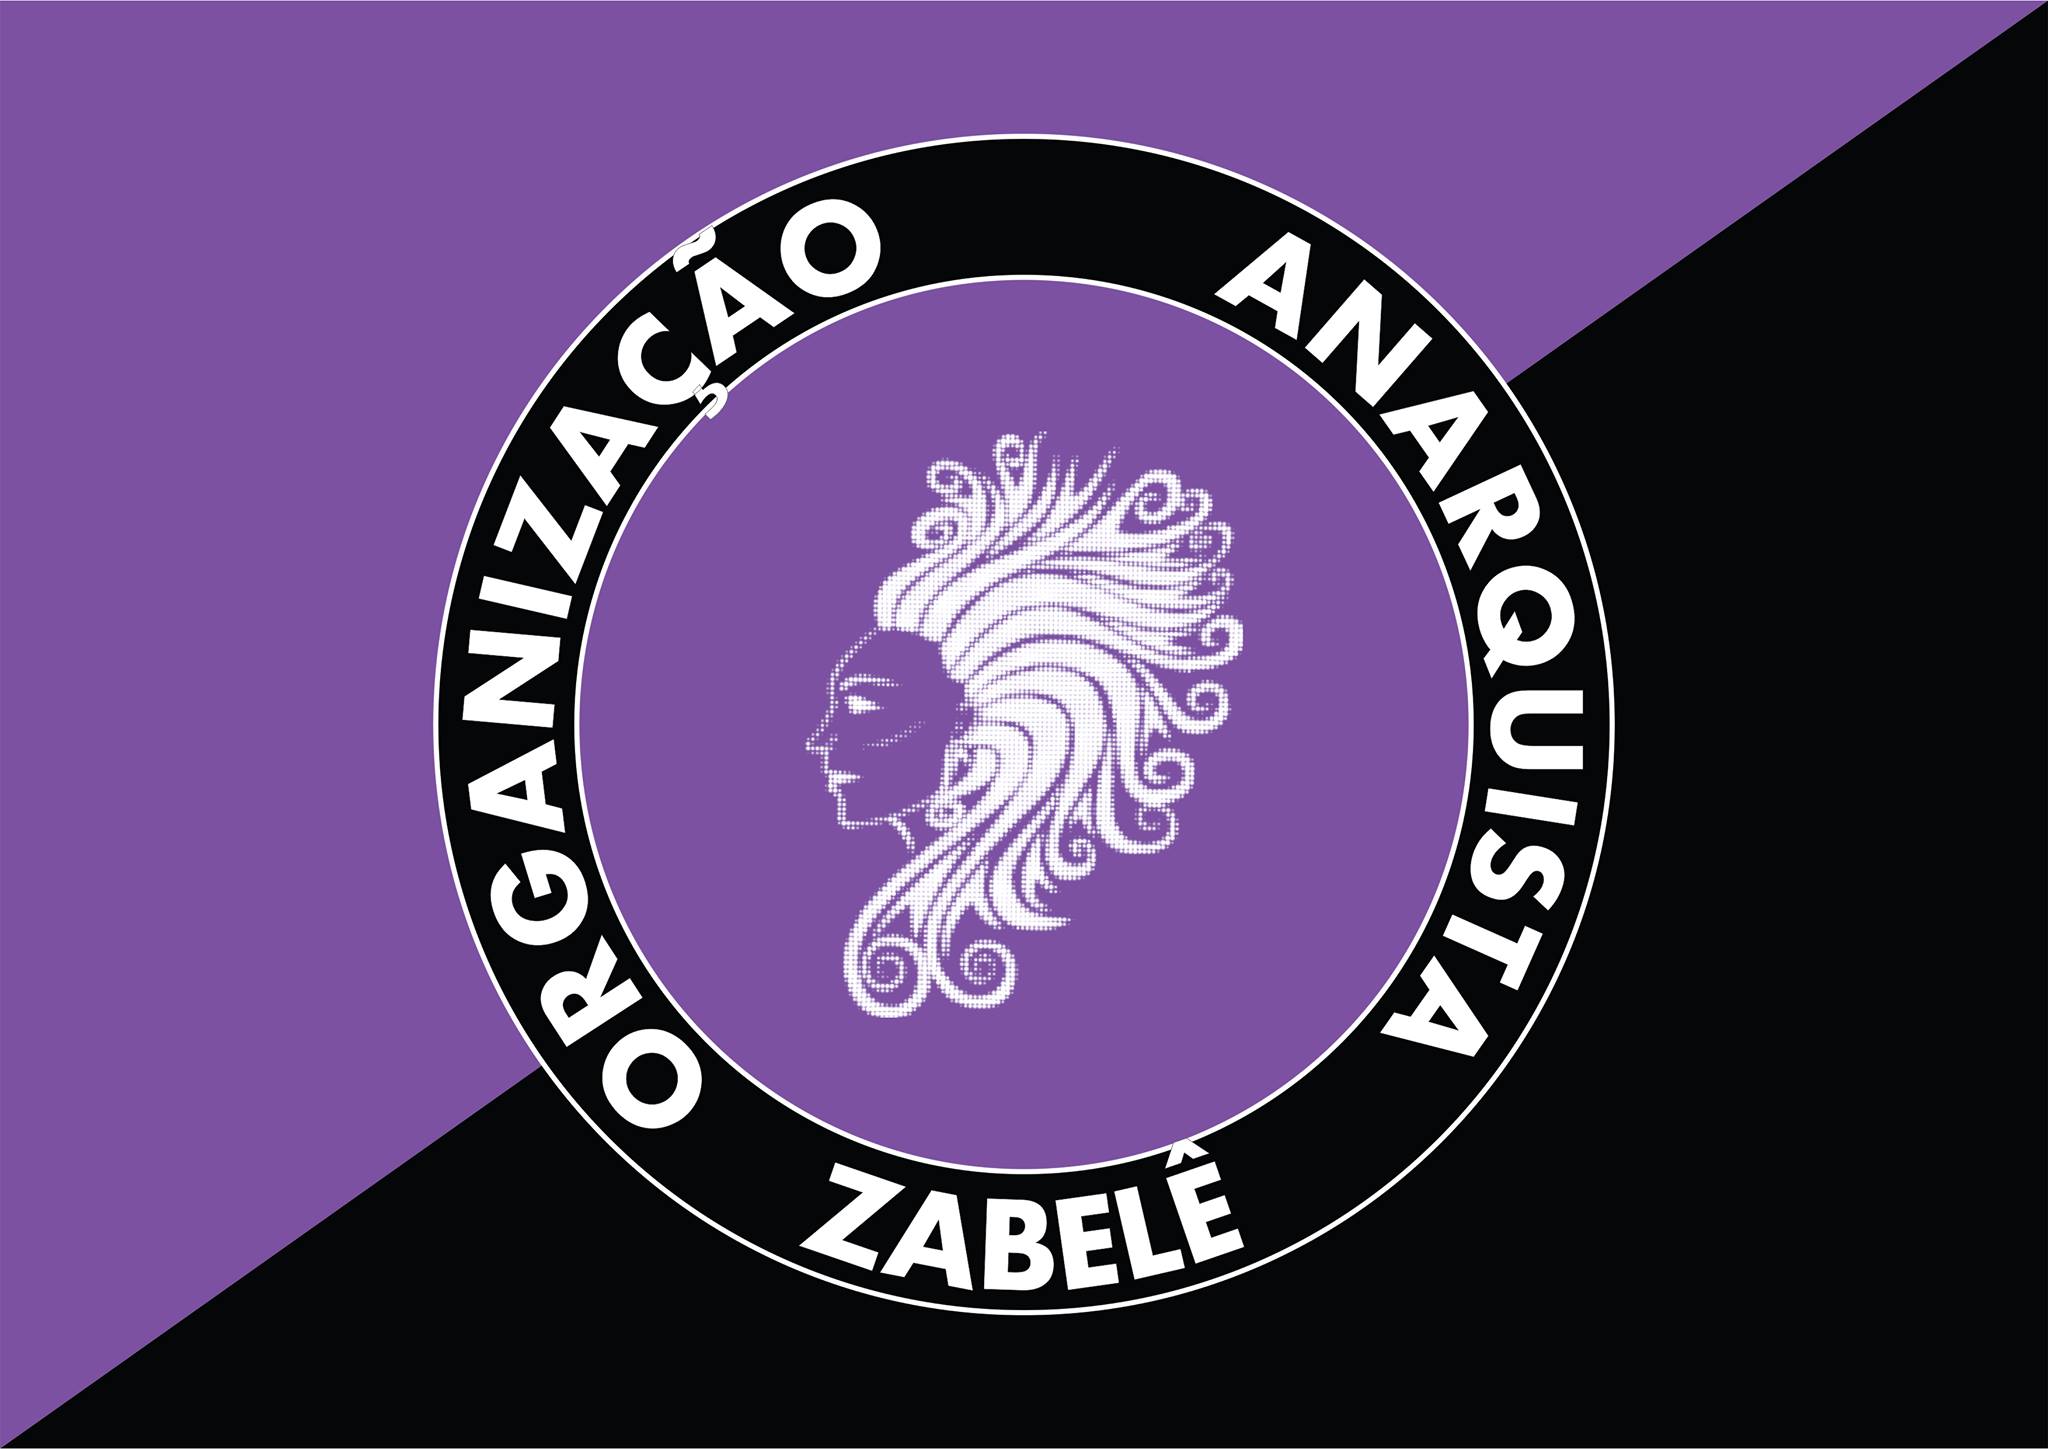 organização anarquista zabelê1